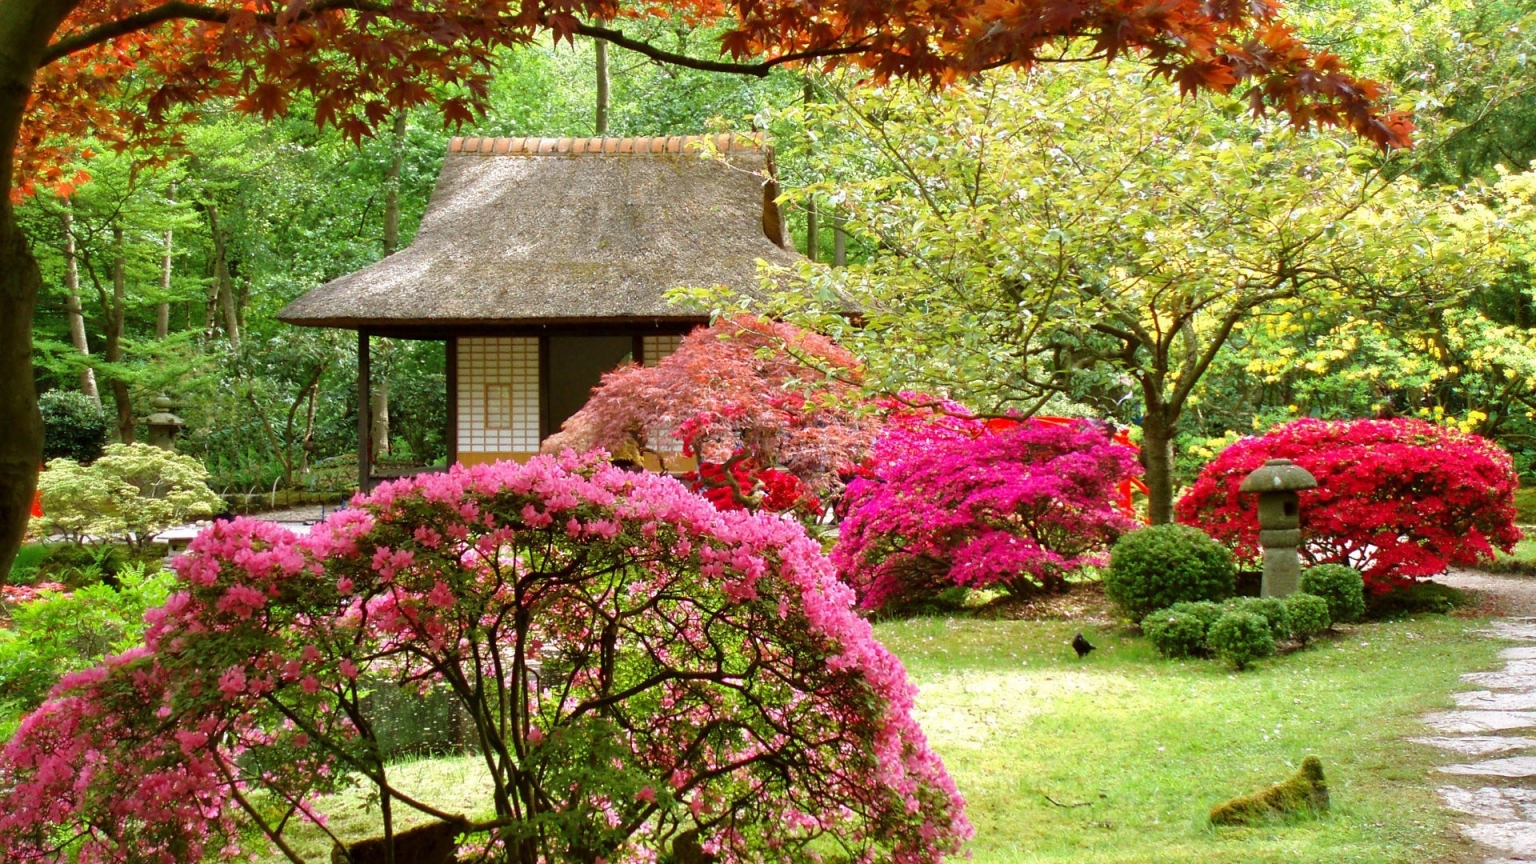 Spring Japanese Garden for 1536 x 864 HDTV resolution